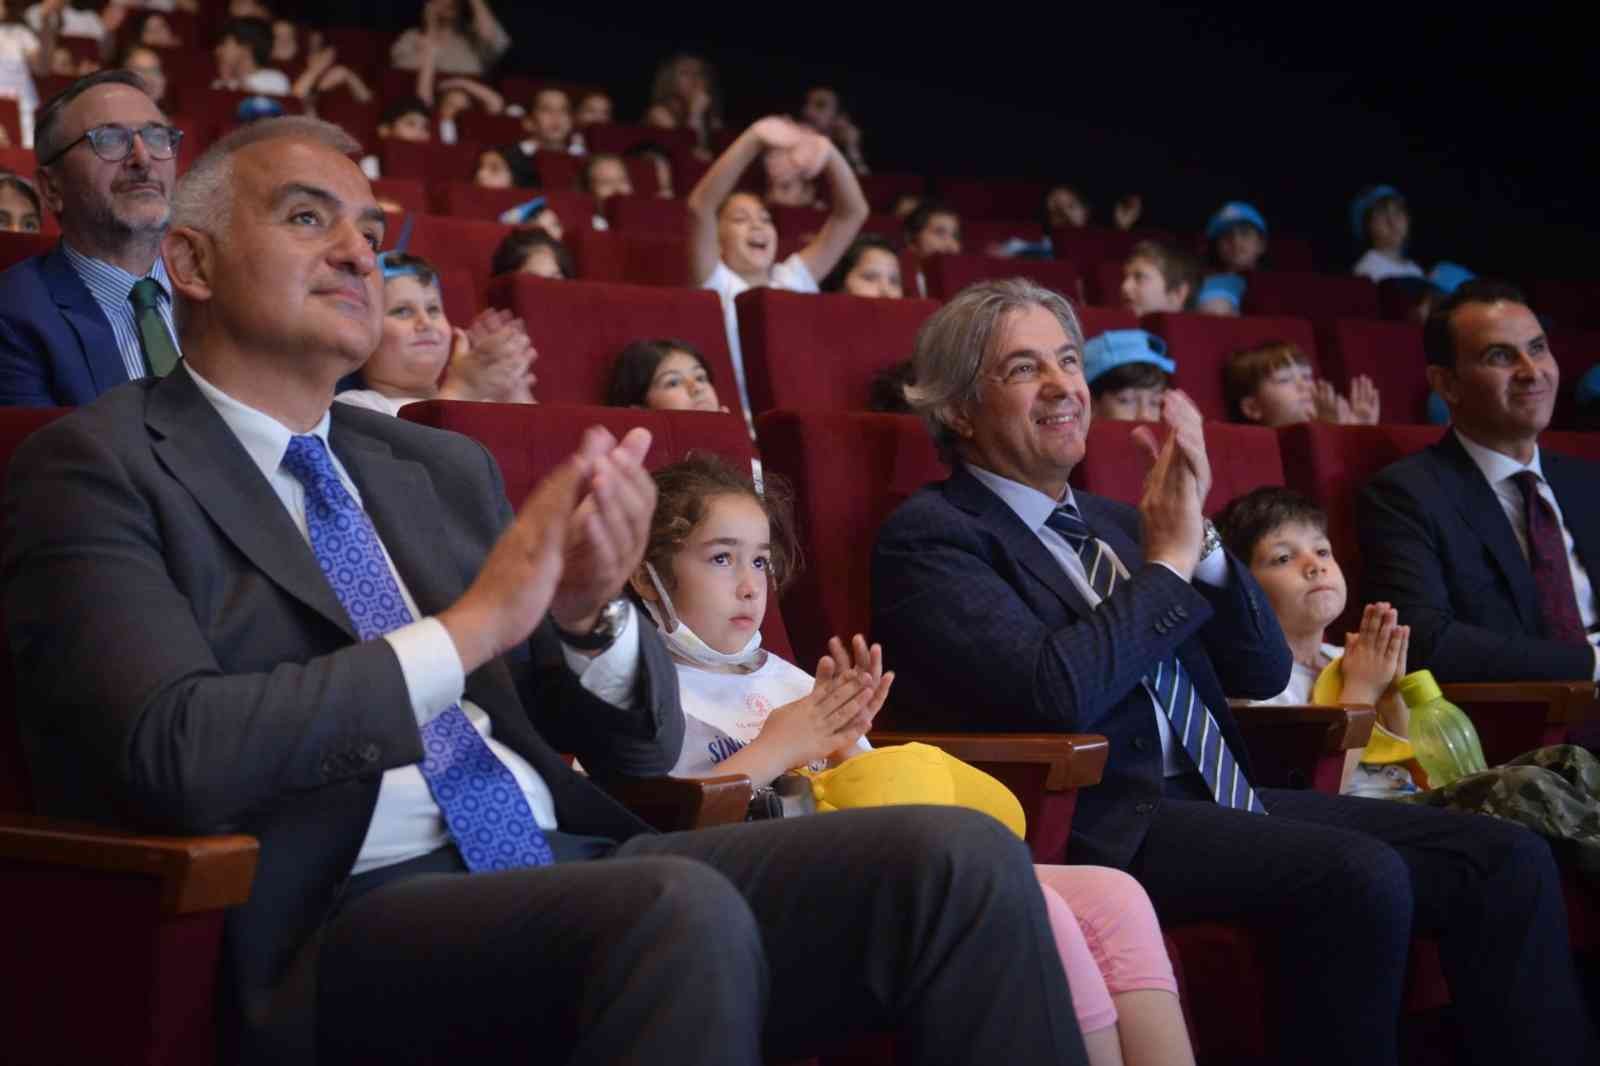 Kültür ve Turizm Bakanı Mehmet Nuri Ersoy, daha önce sinemaya gitmemiş çocuklarla birlikte film izledi. Bakan Ersoy, “Hedefimiz 1 milyon çocuğu ...